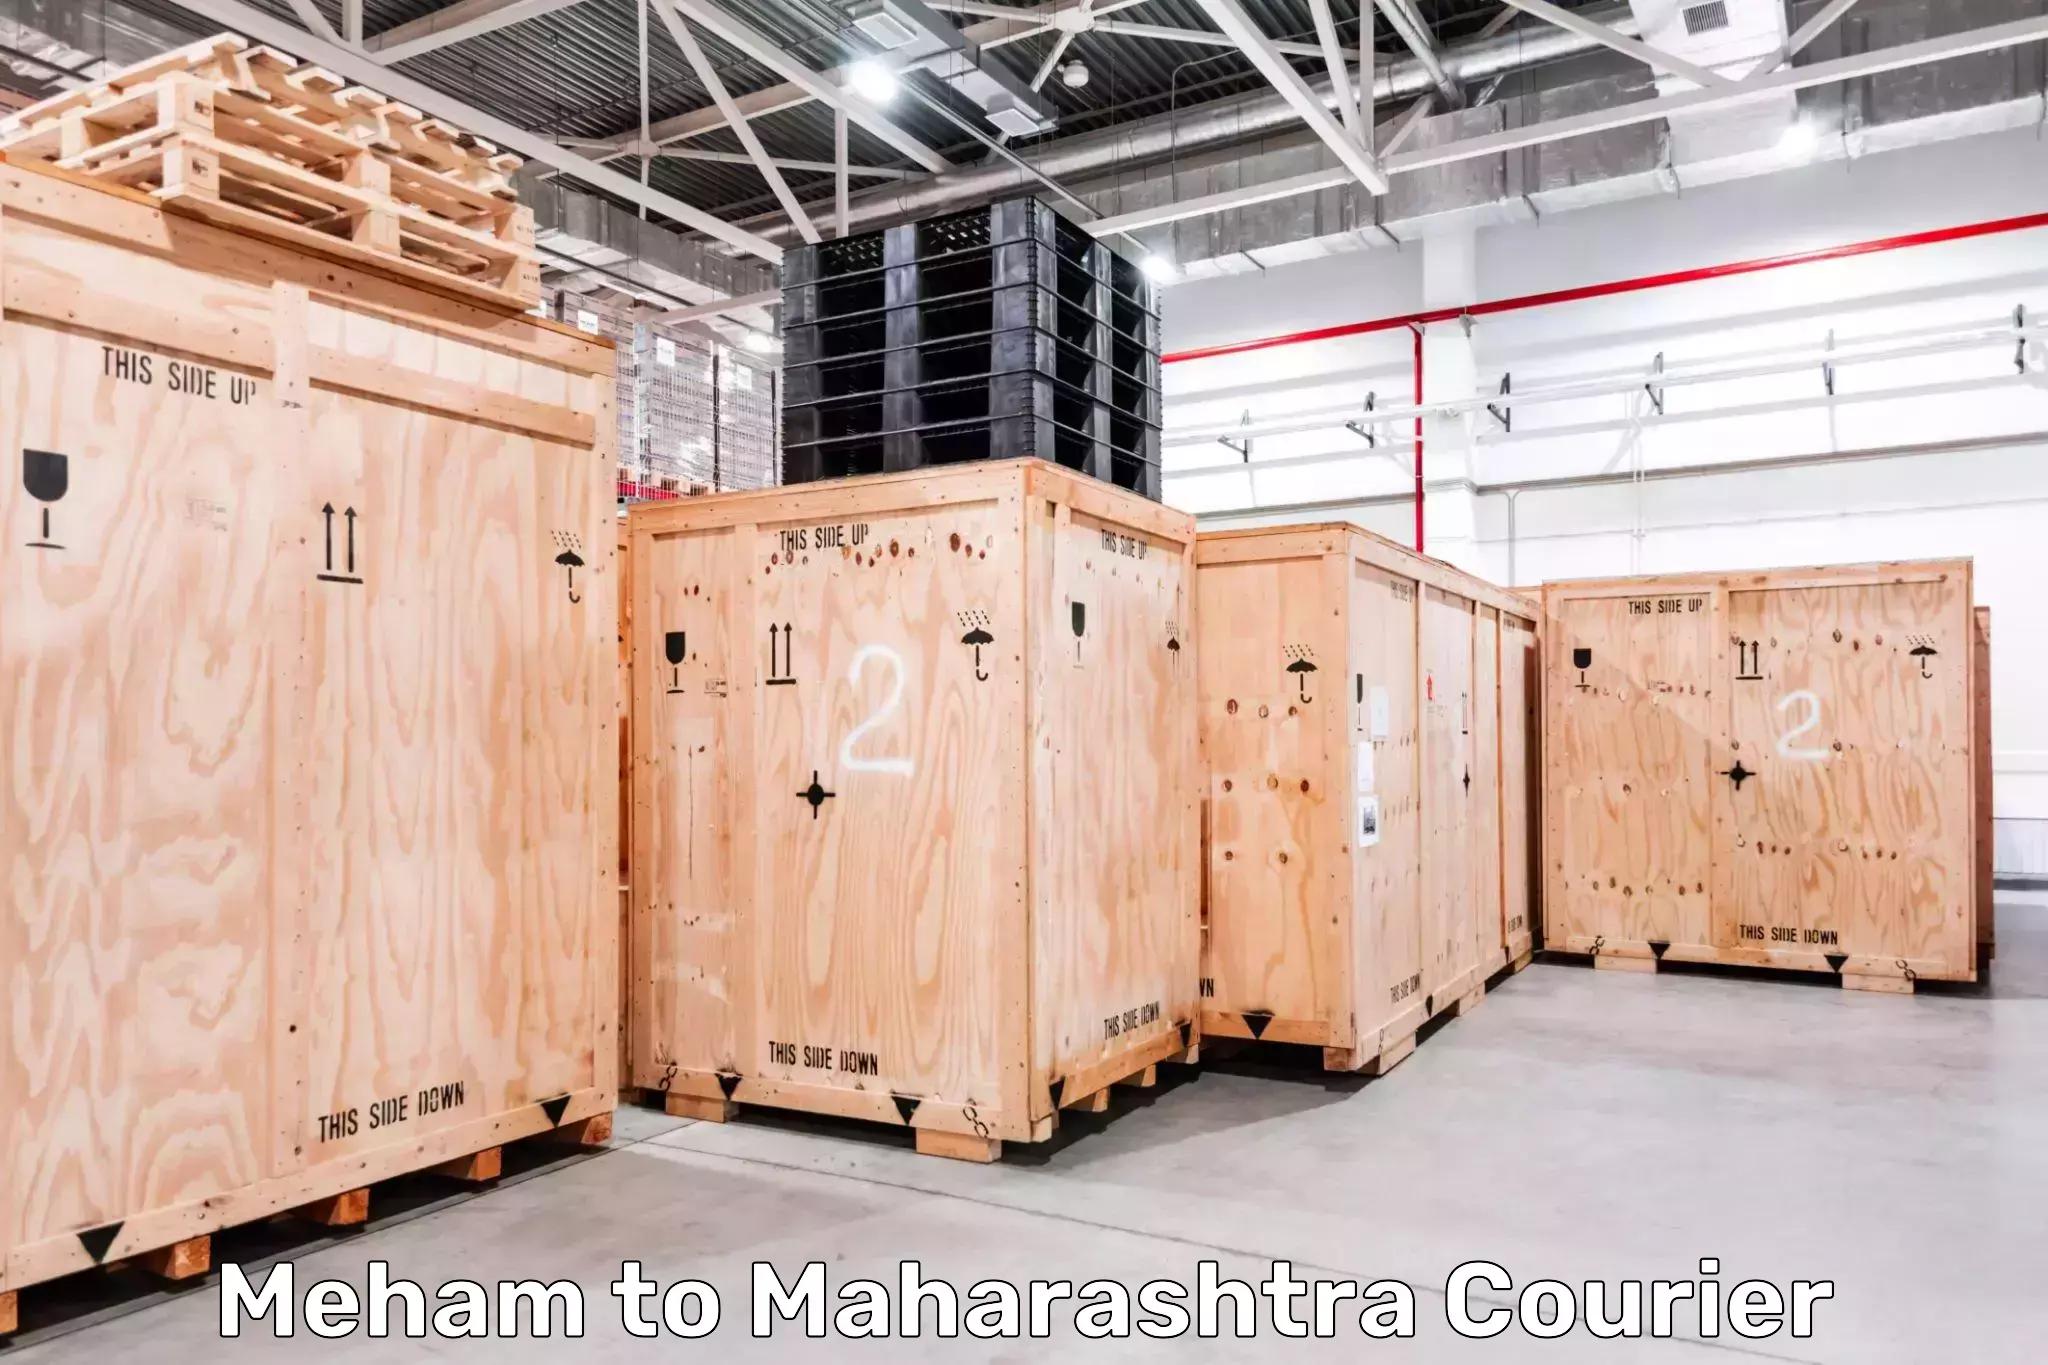 Courier service comparison Meham to Maharashtra